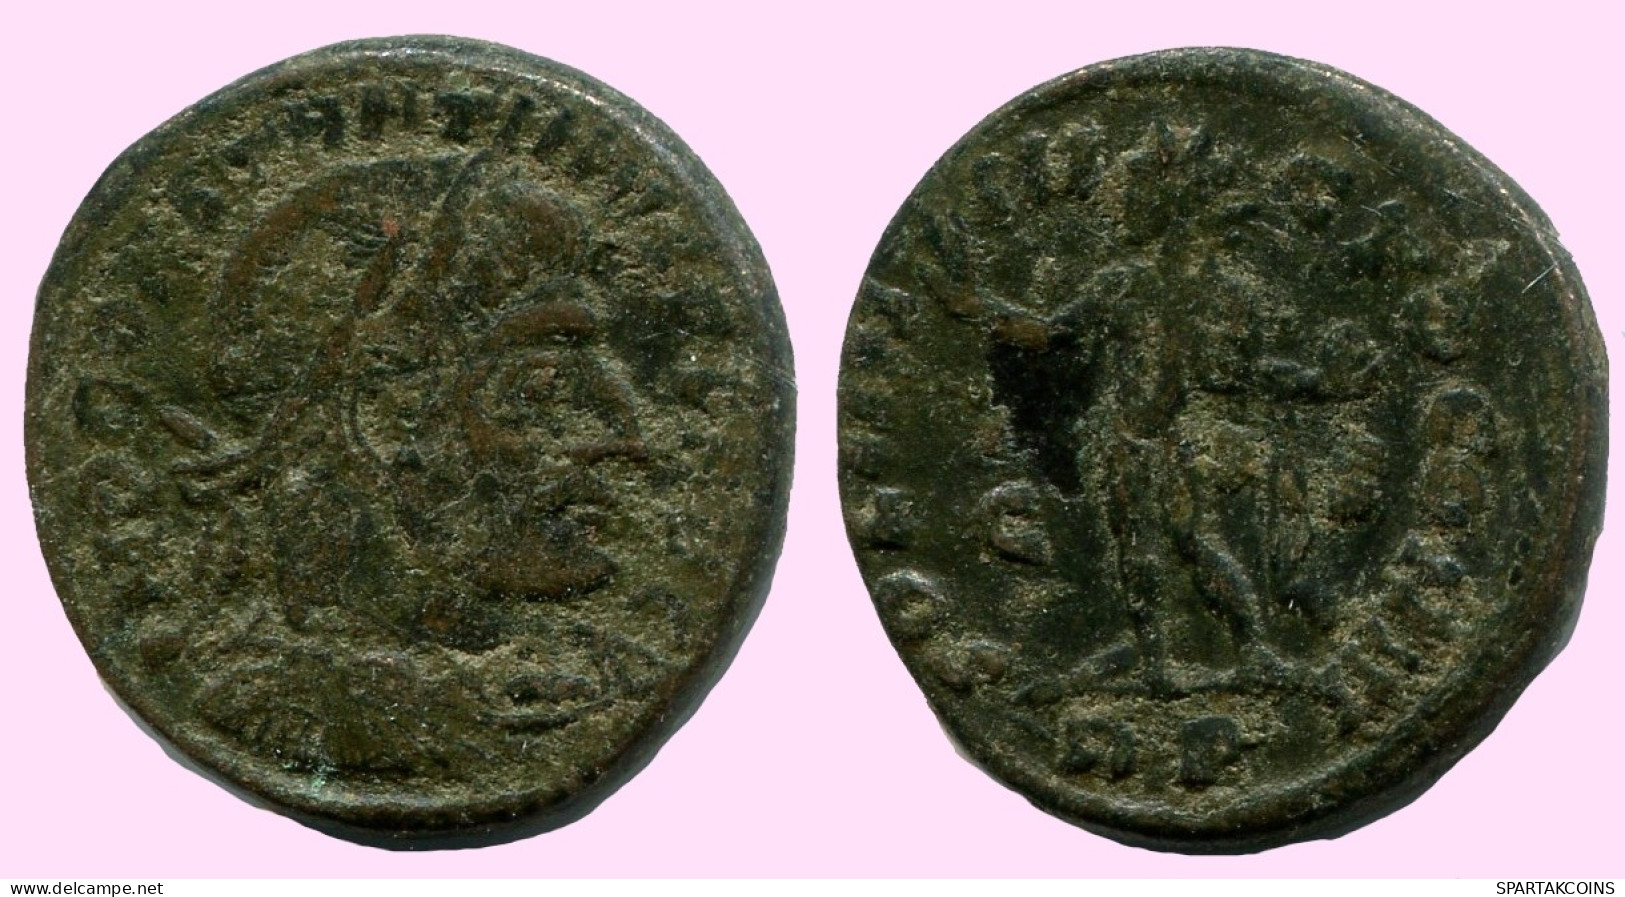 CONSTANTINE I Authentic Original Ancient ROMAN Bronze Coin #ANC12205.12.U.A - Der Christlischen Kaiser (307 / 363)